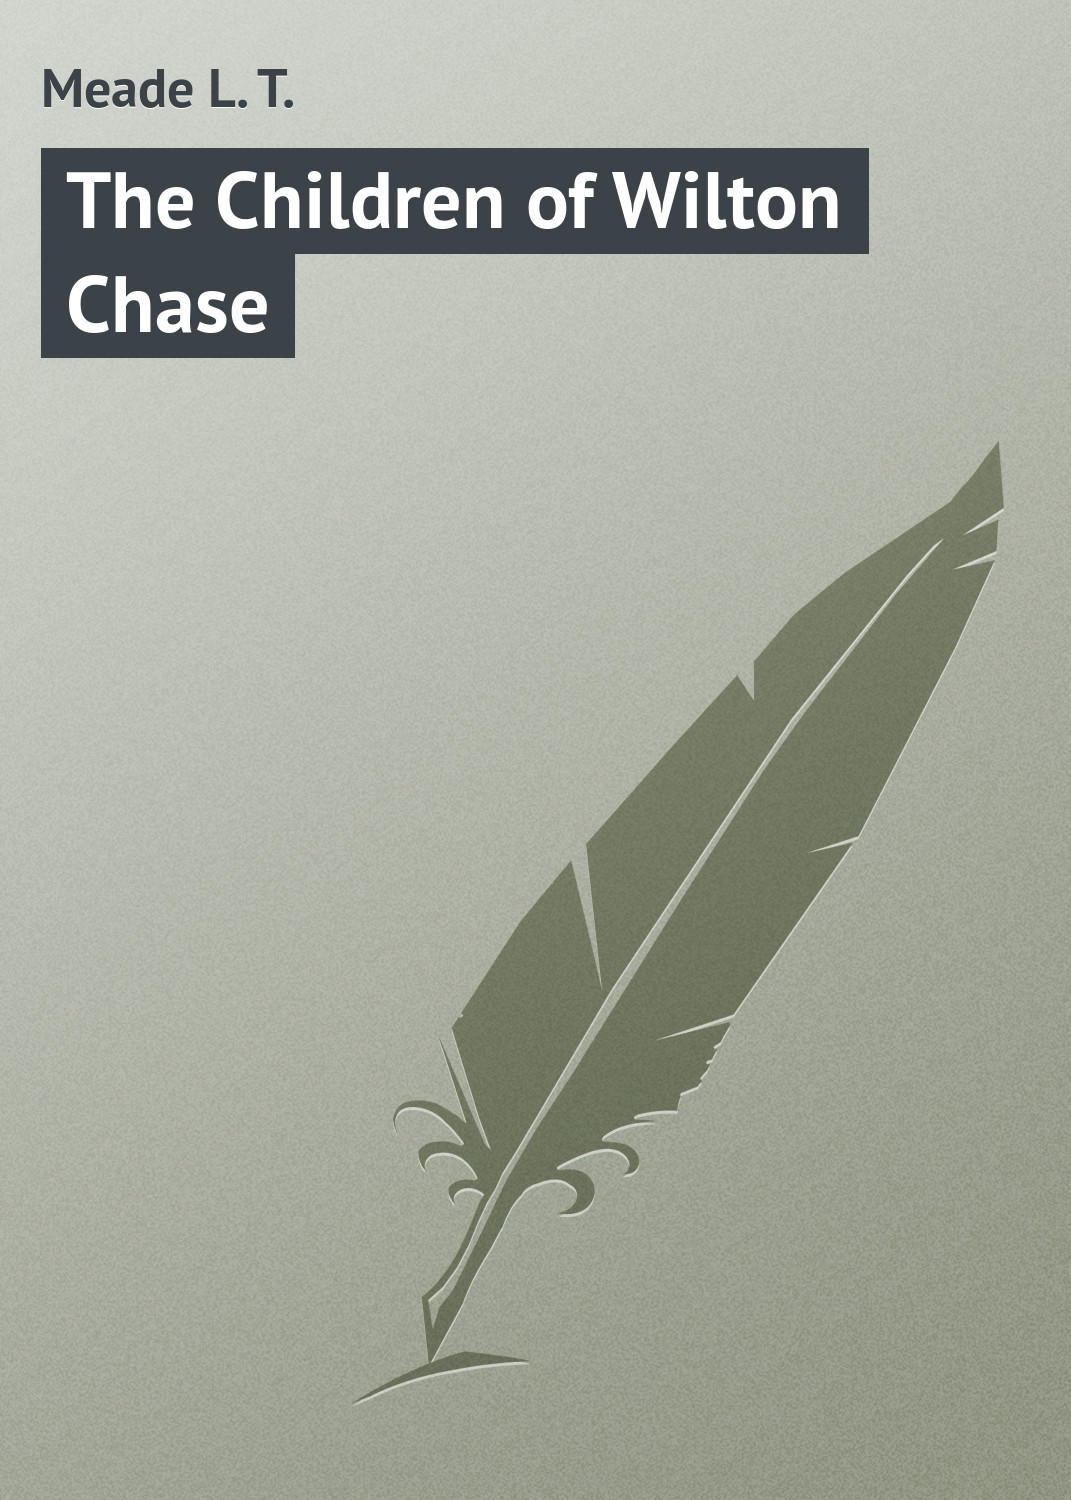 Книга The Children of Wilton Chase из серии , созданная L. Meade, может относится к жанру Зарубежная классика, Зарубежные детские книги, Иностранные языки. Стоимость электронной книги The Children of Wilton Chase с идентификатором 23168507 составляет 5.99 руб.